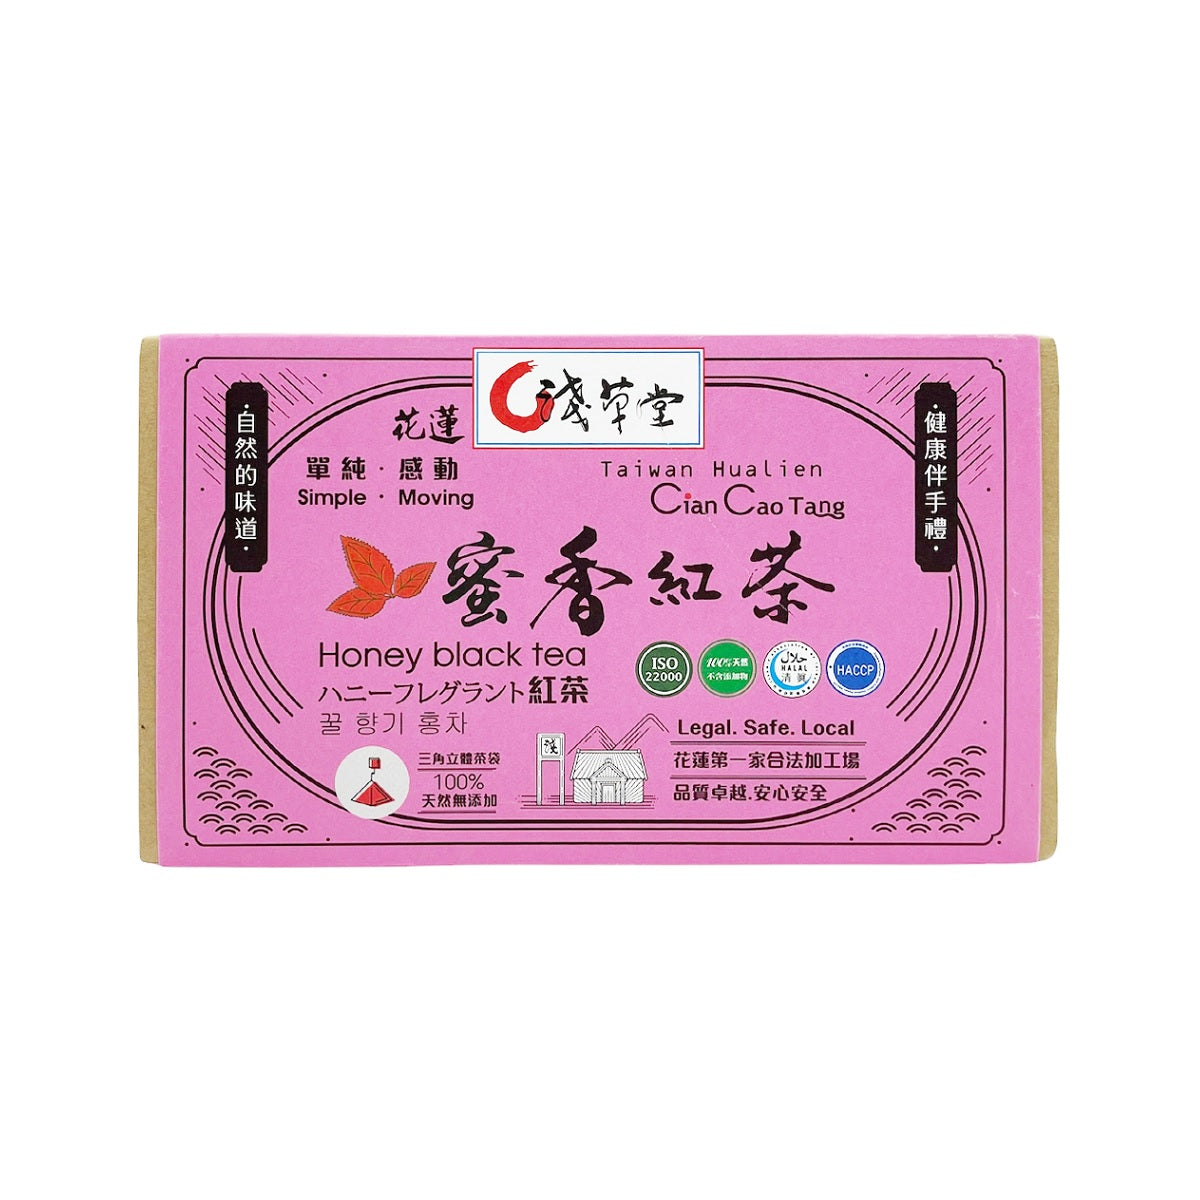 【 CIAN CAO TANG】 Black Tea 3.5g*12pcs